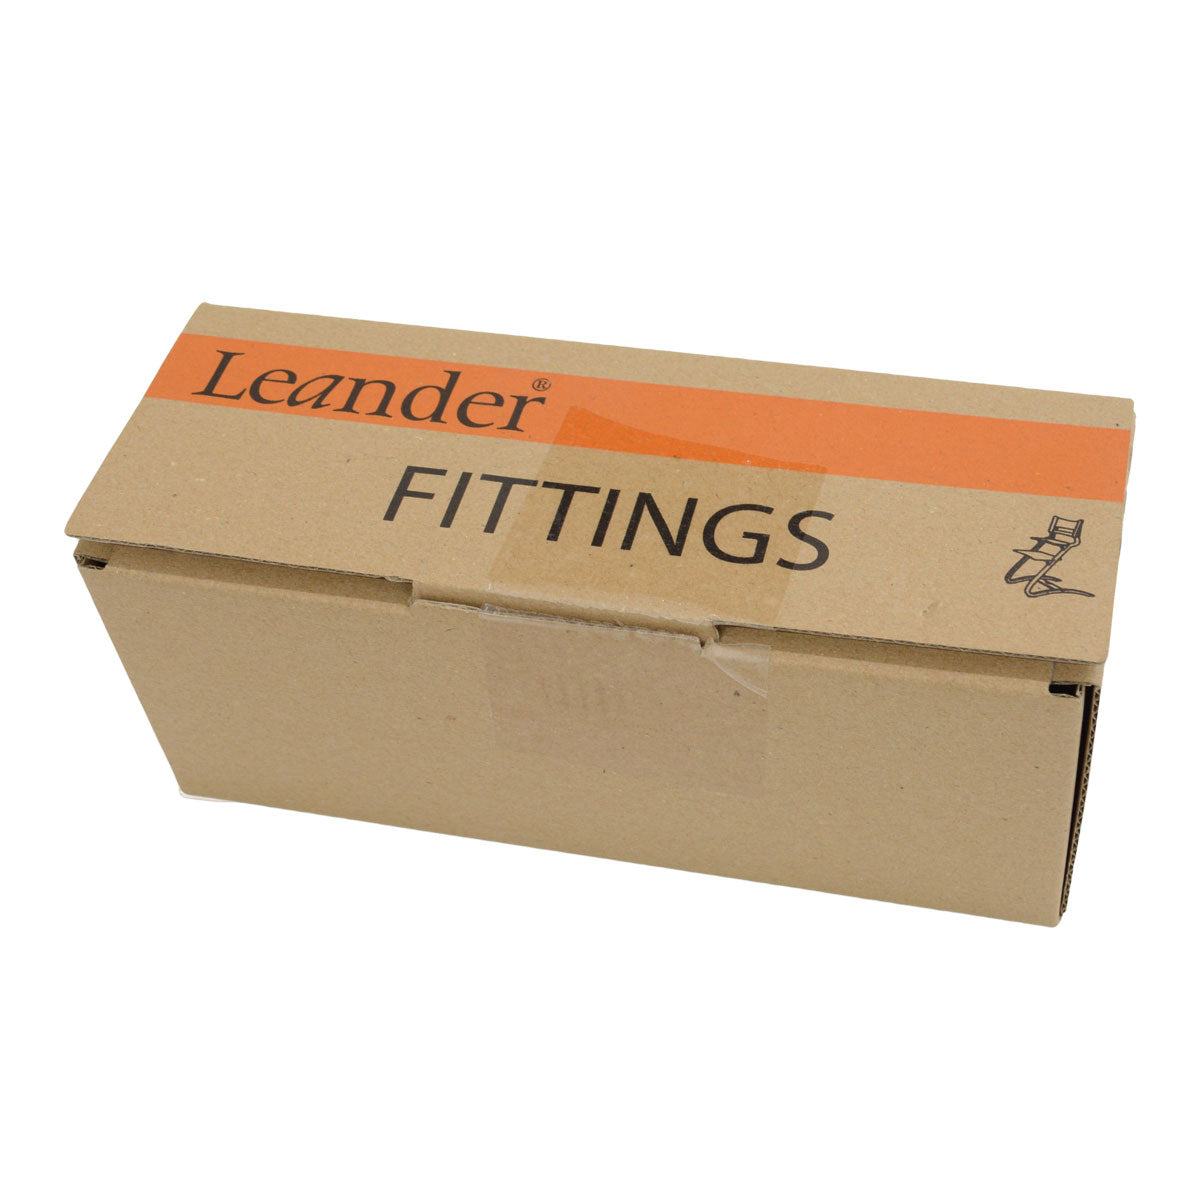 【パーツ】 Leander リエンダー ハイチェア Fitting Boxセット